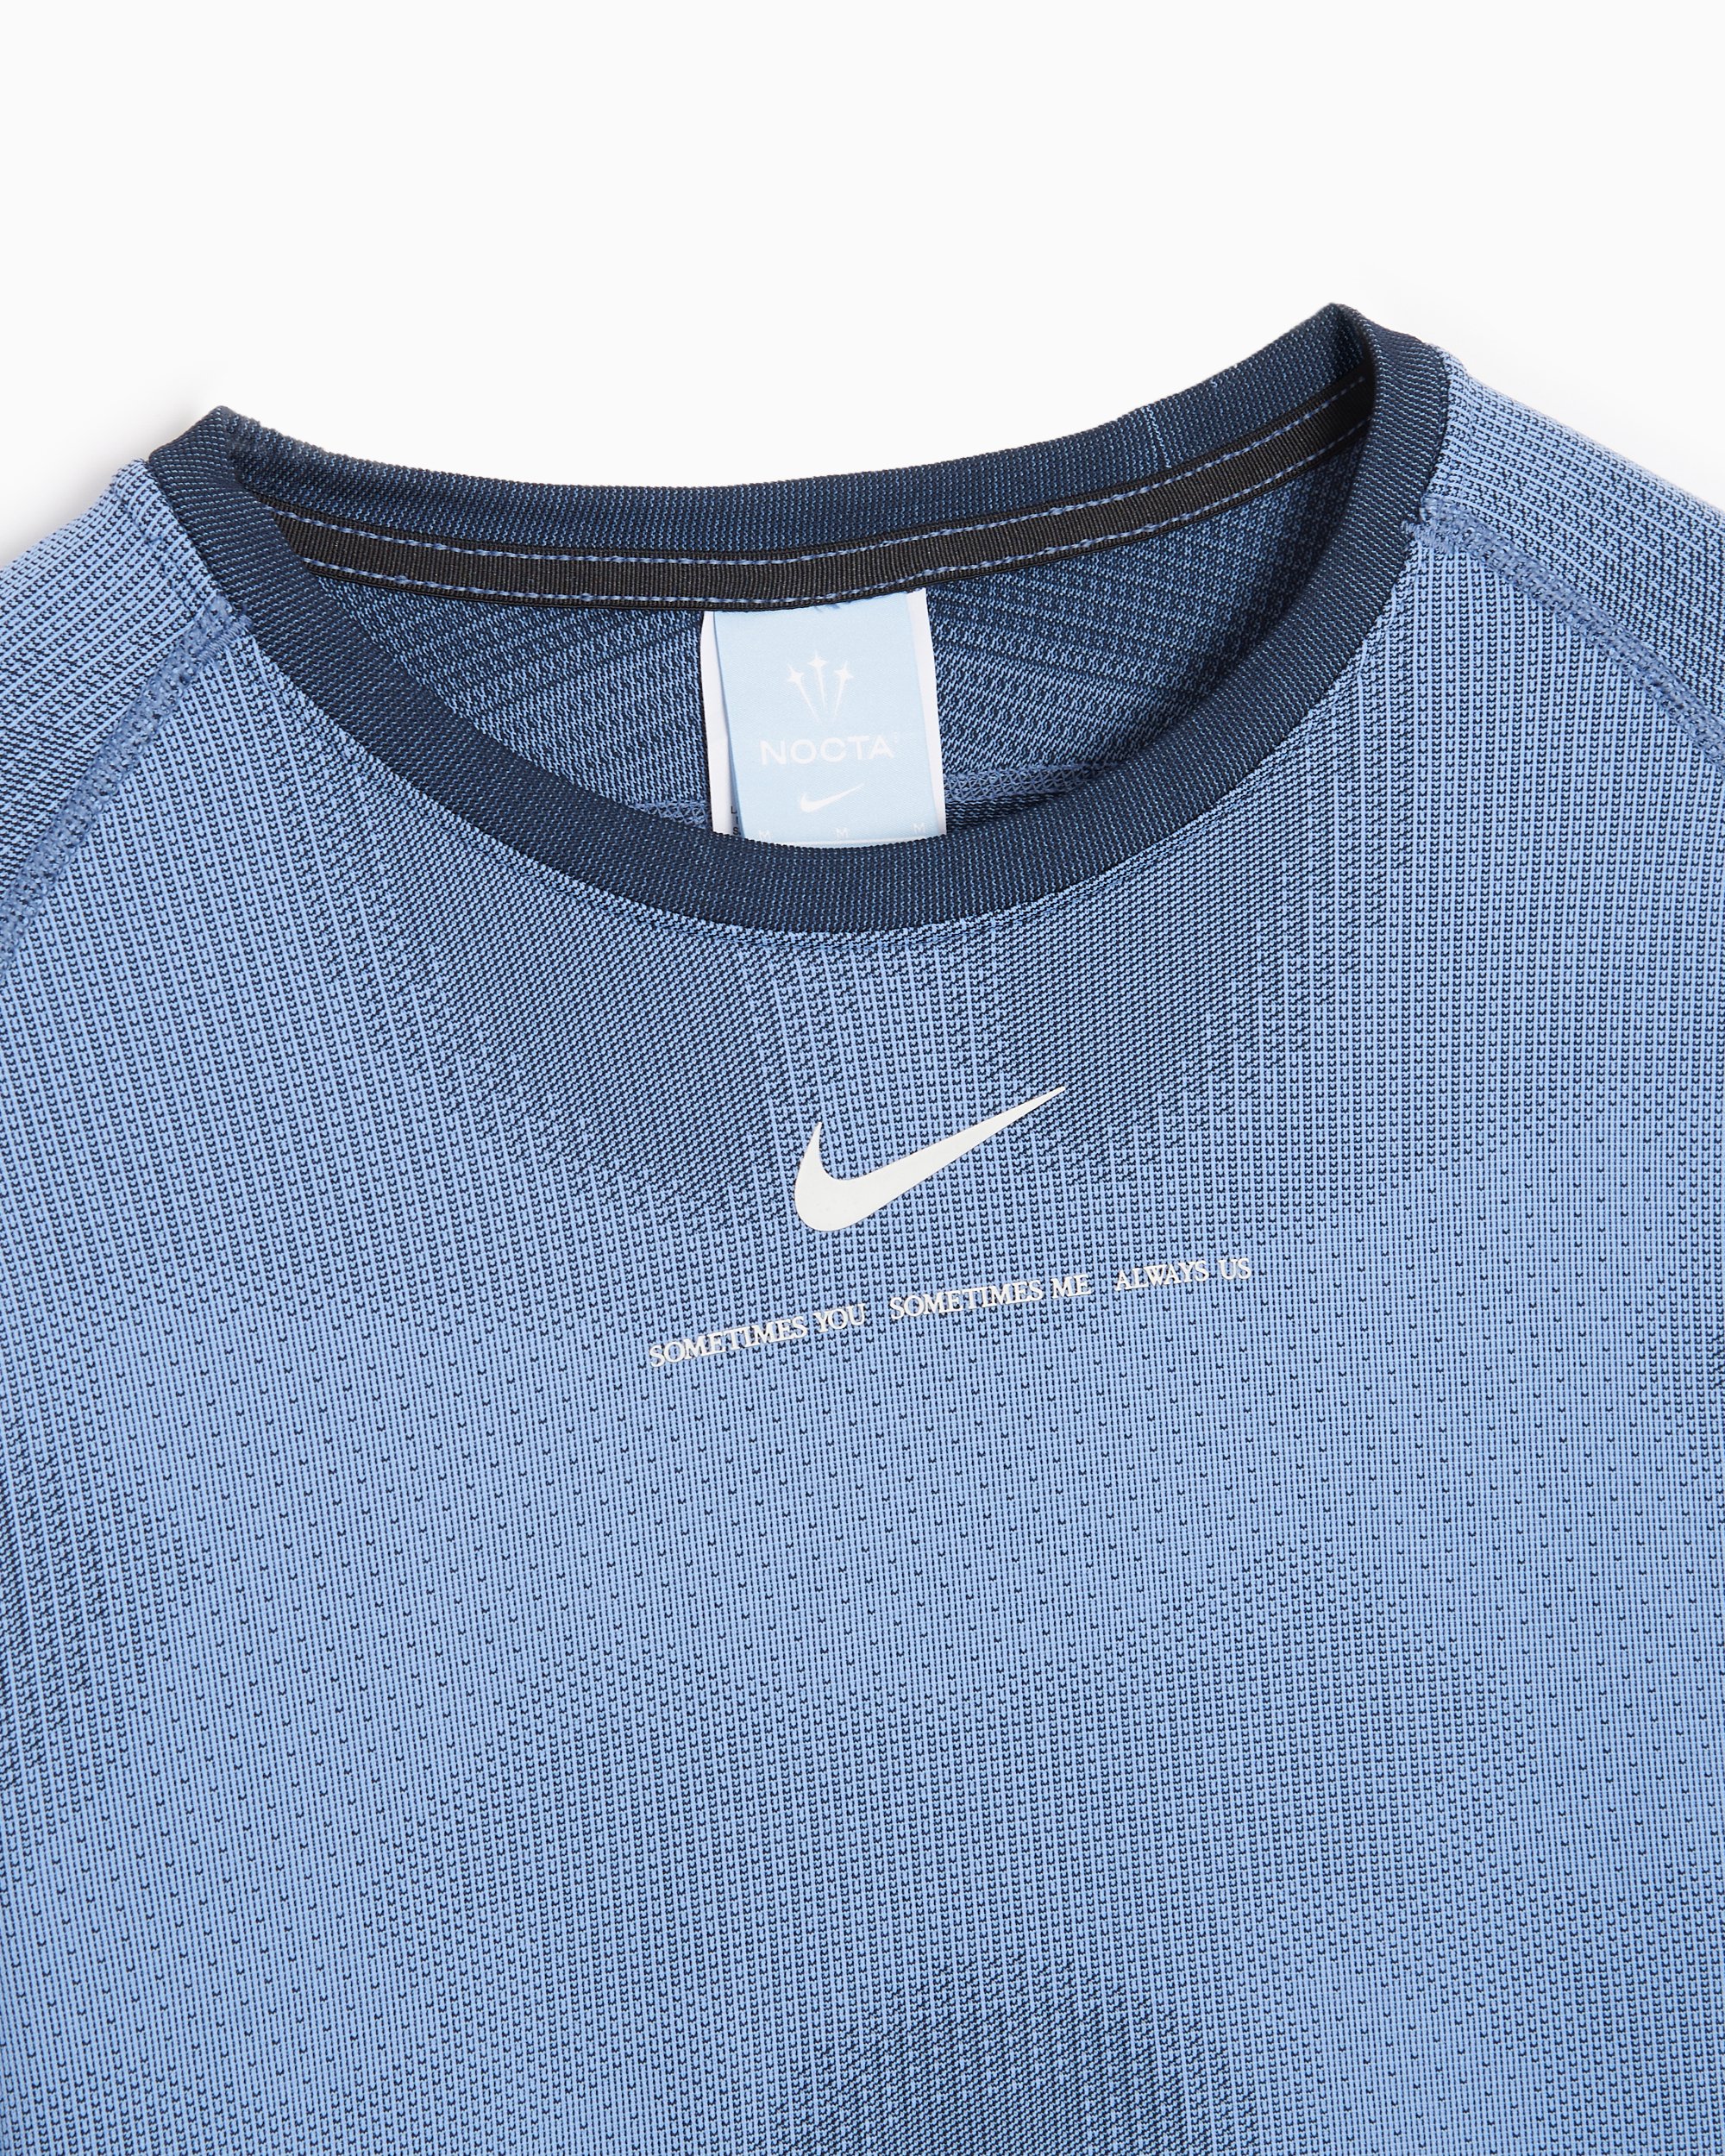 Nike x Drake NOCTA NRG Dri-FIT Men's Long Sleeve T-Shirt Azul DV3653-479